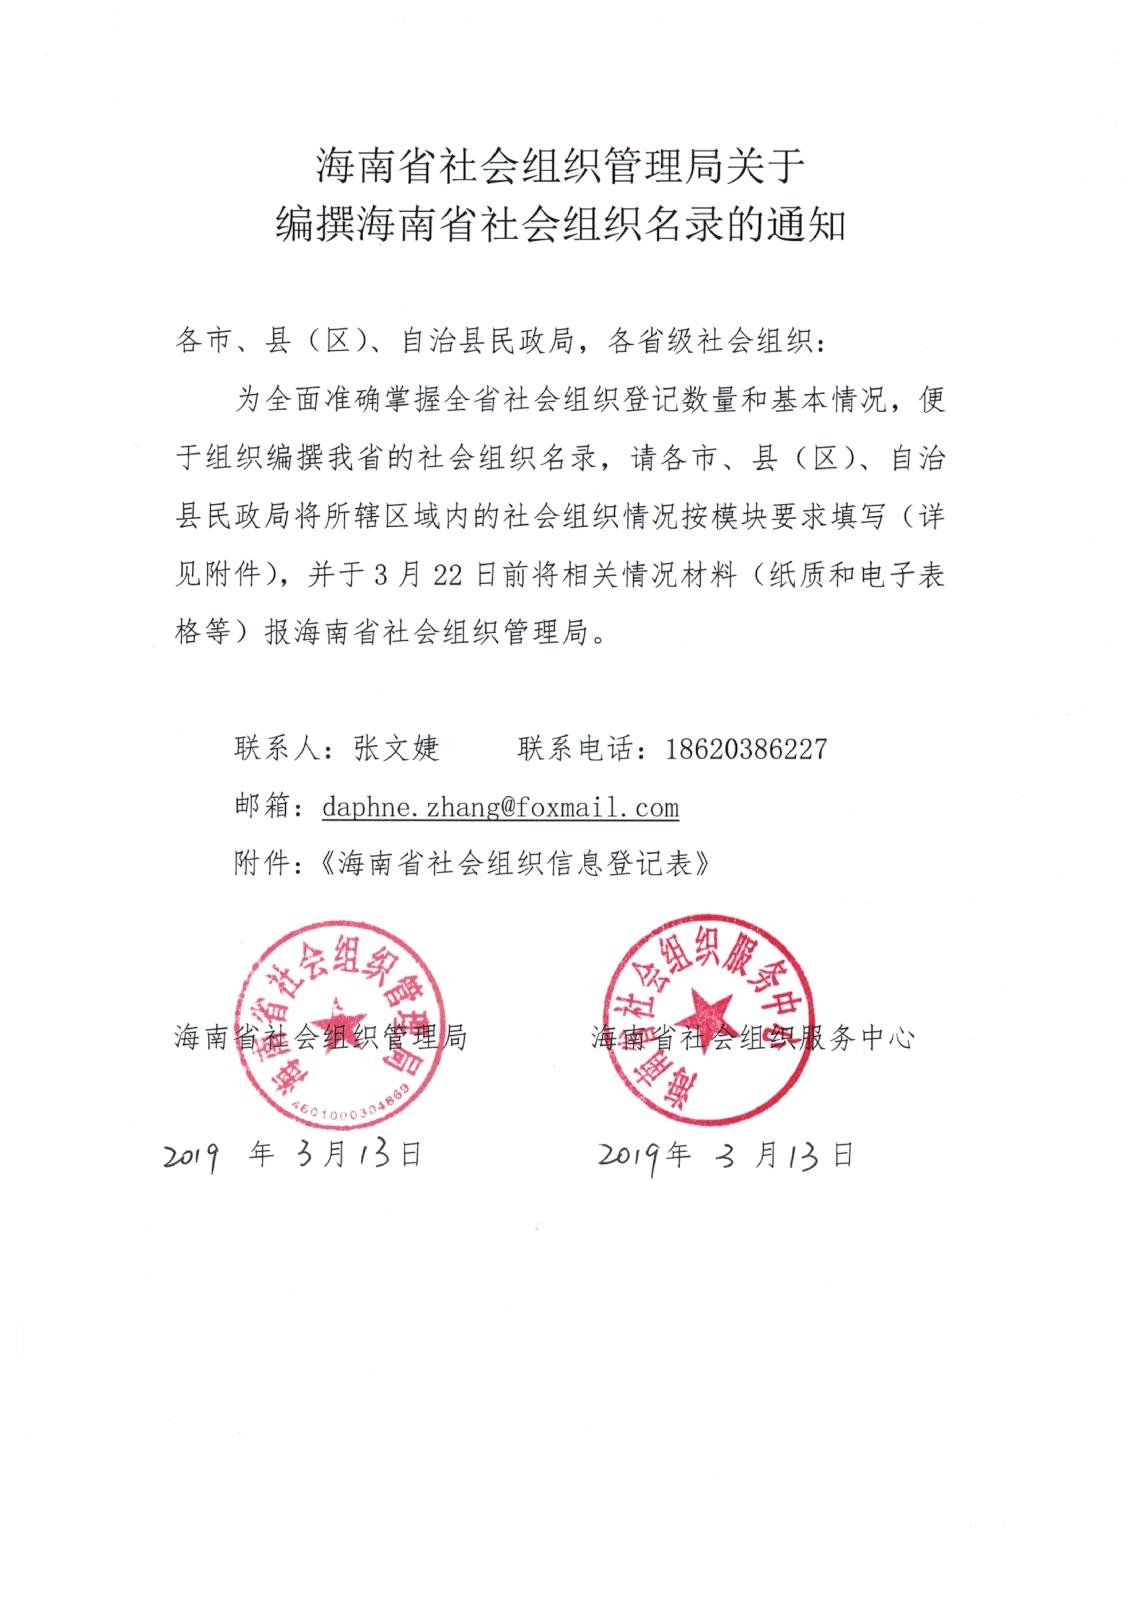 海南省社会组织管理局关于编撰海南省社会组织名录的通知.jpg